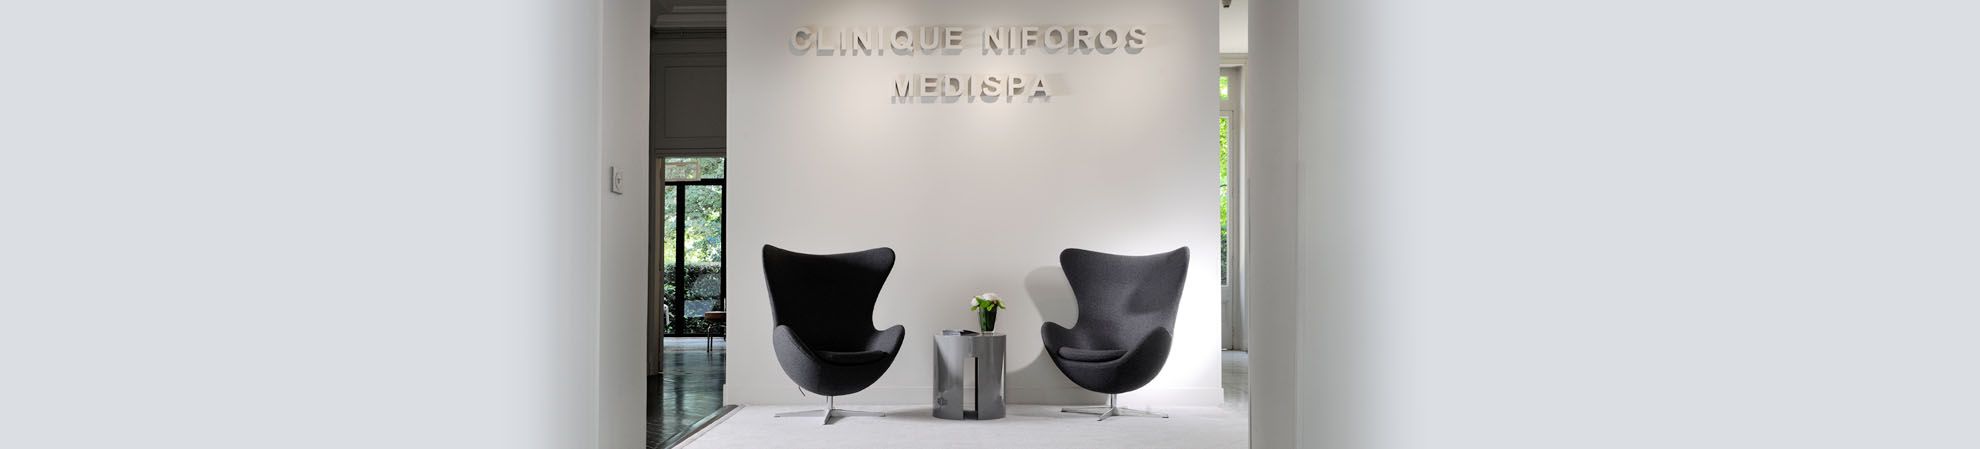 Clinique Niforos